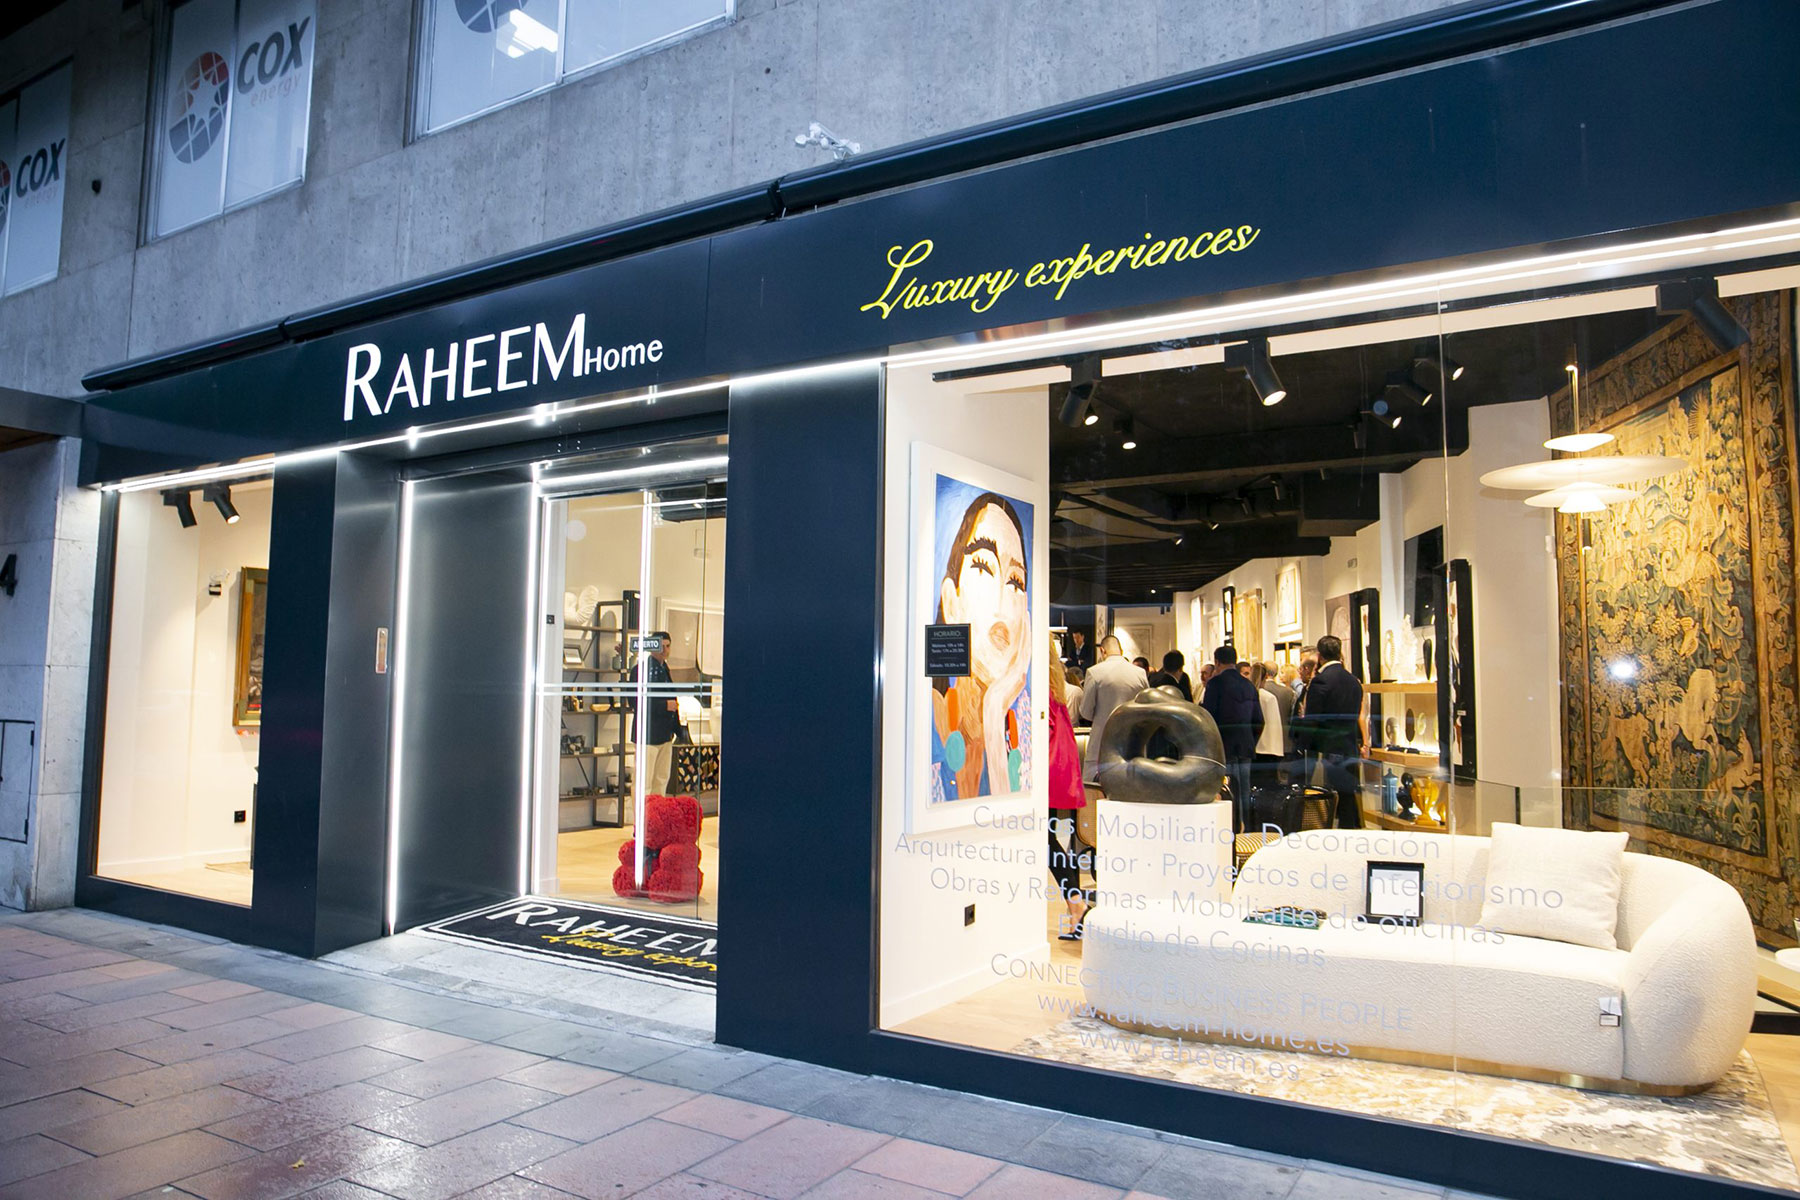 Blossom asiste a la inauguración de la nueva boutique de Raheem Home